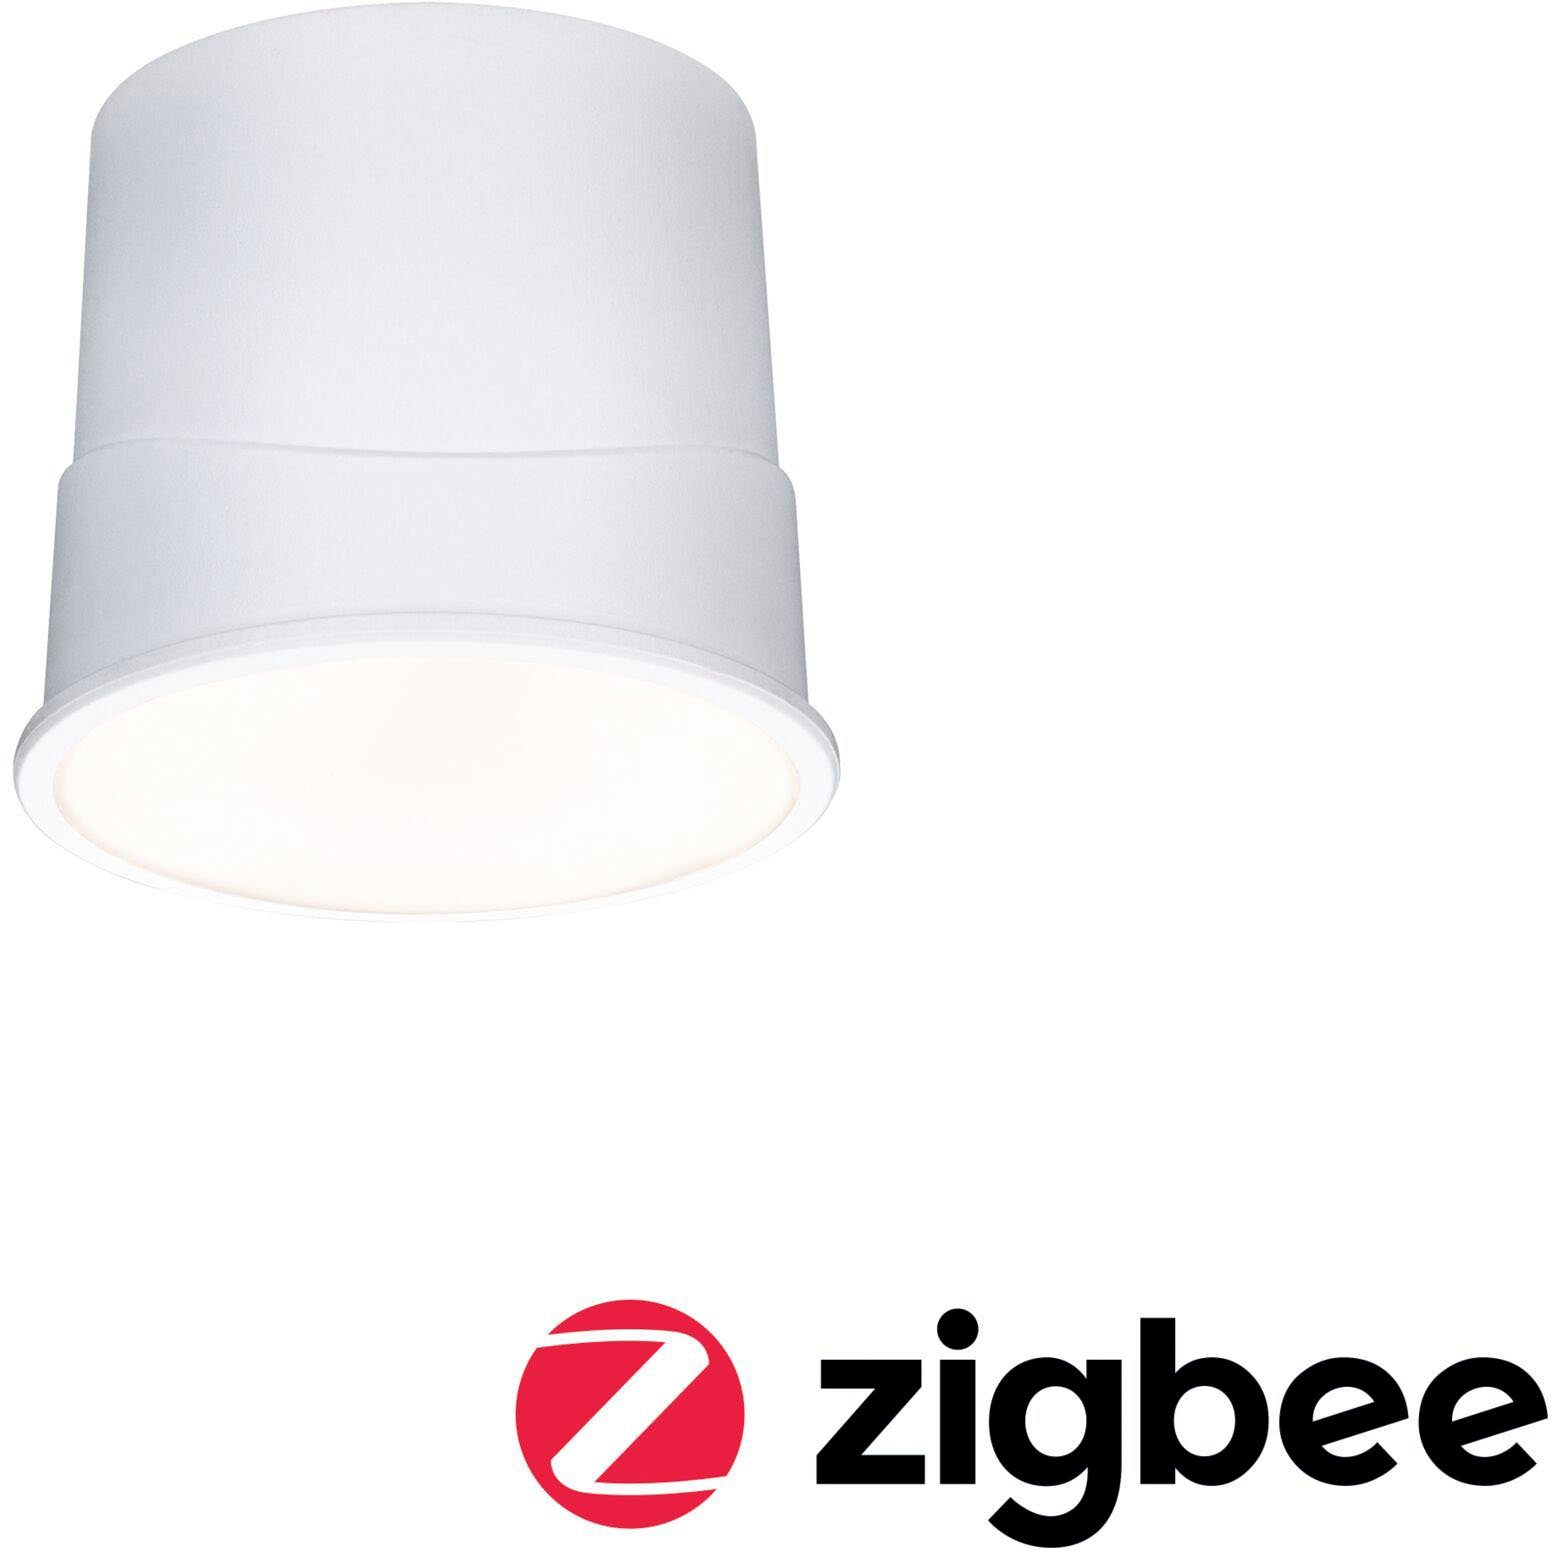 Base Einbauleuchte LED Zigbee Paulmann Warmweiß, 230V 430lm, Bewegungsmelder,